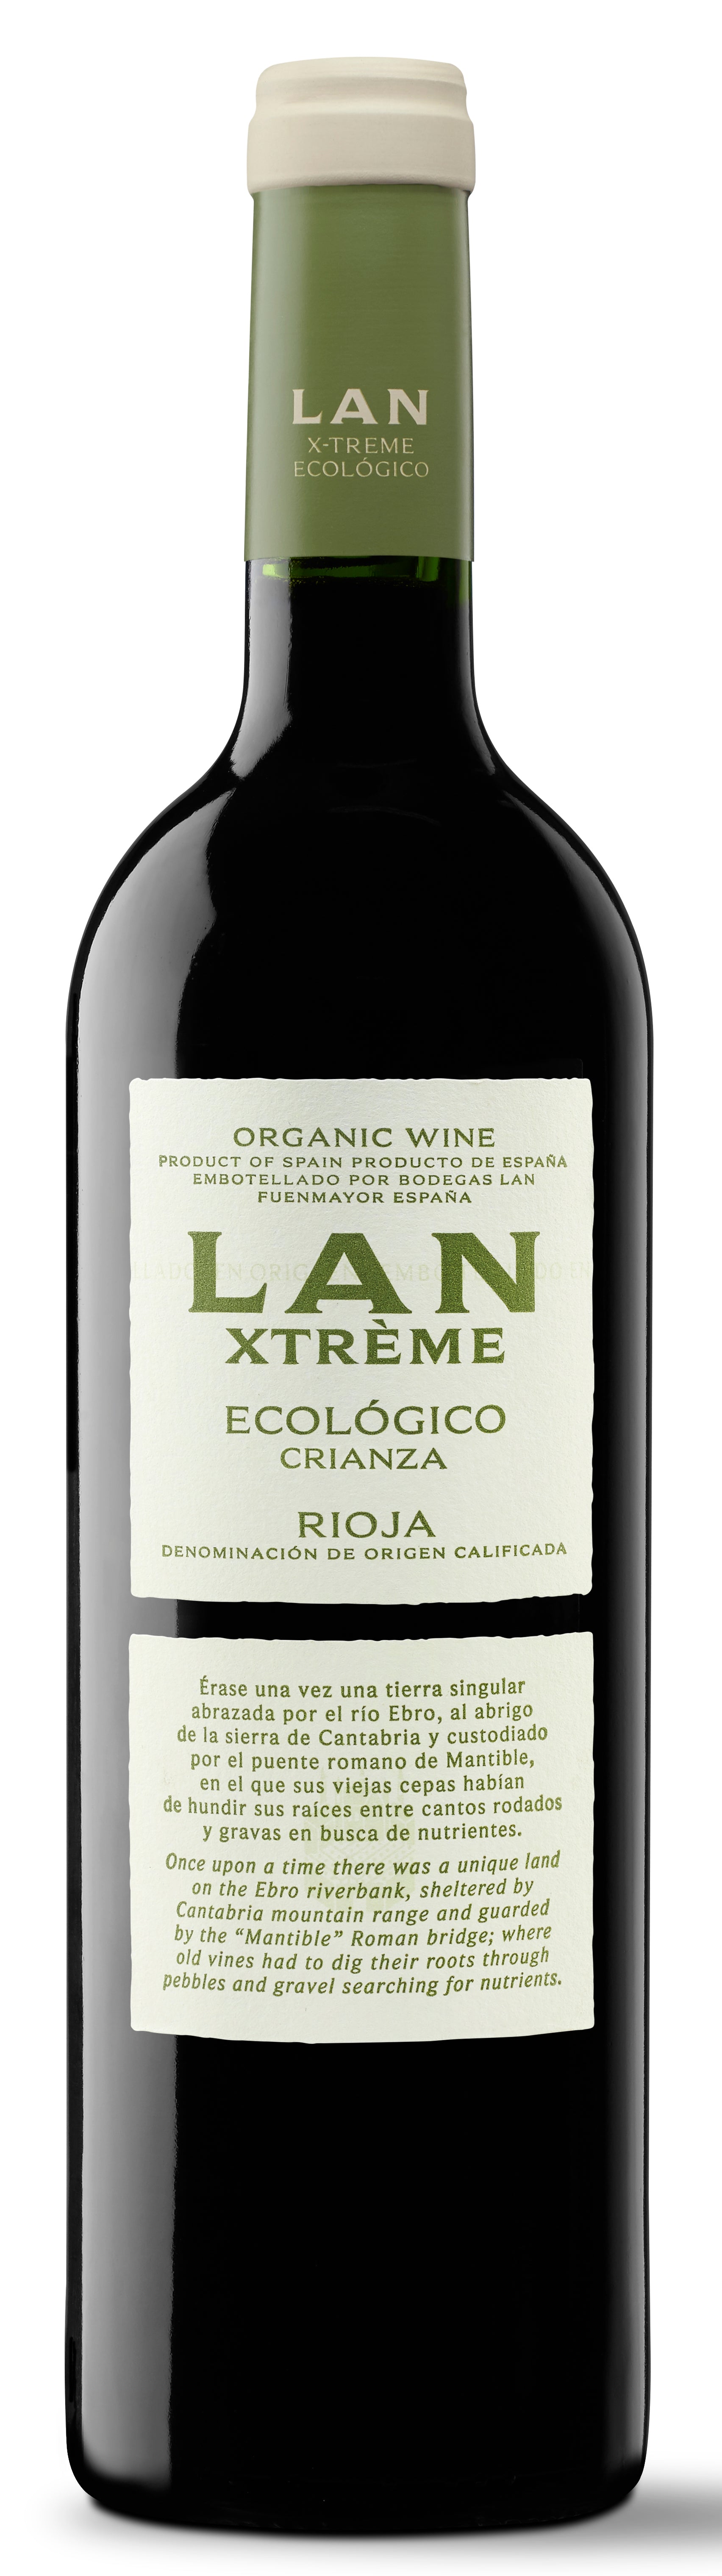 Bodegas LAN 'Xtreme' Ecologico Rioja Crianza 2019